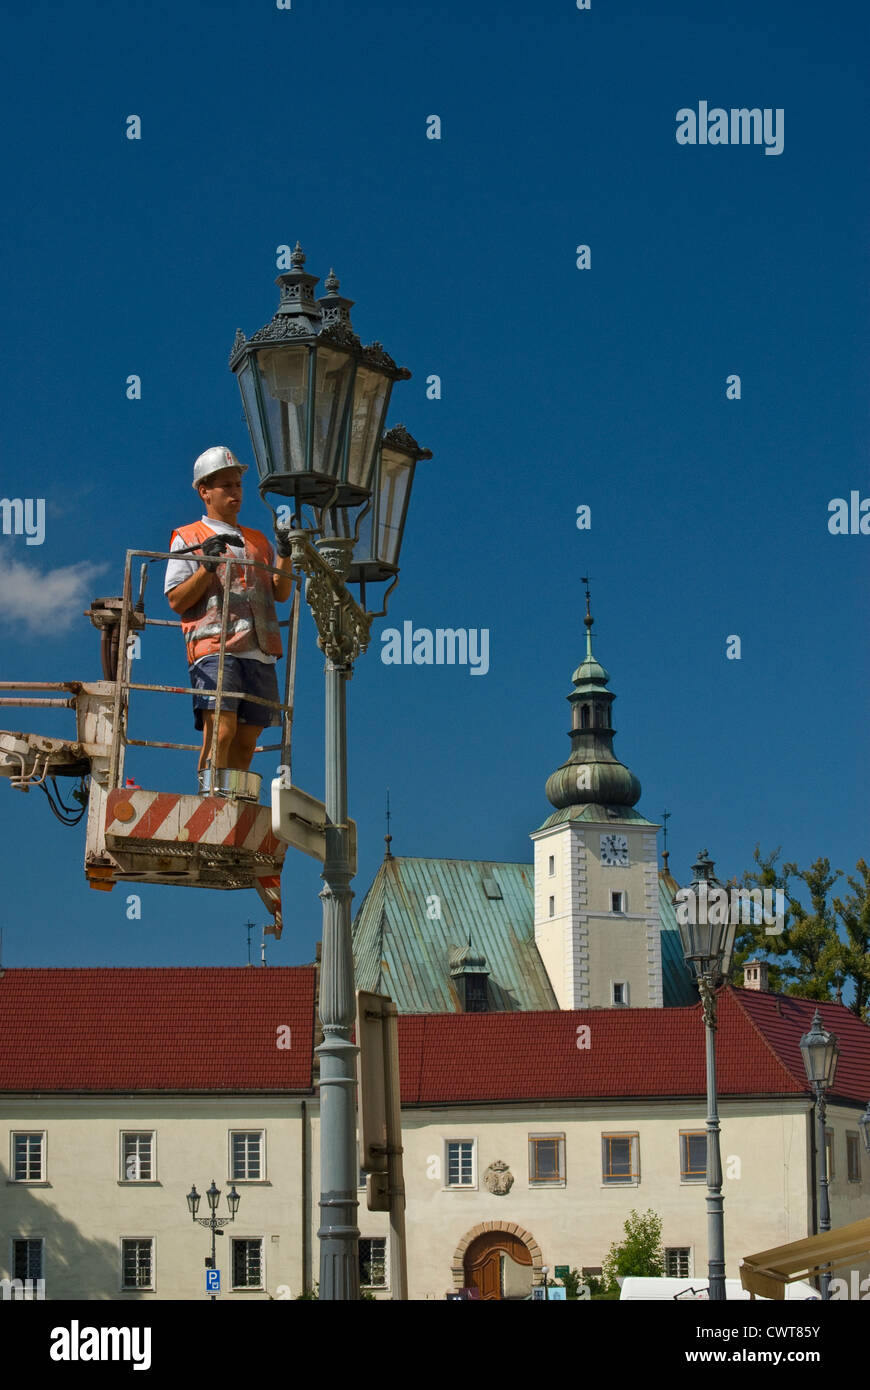 Réparation de lampadaire Banque de photographies et d'images à haute  résolution - Alamy